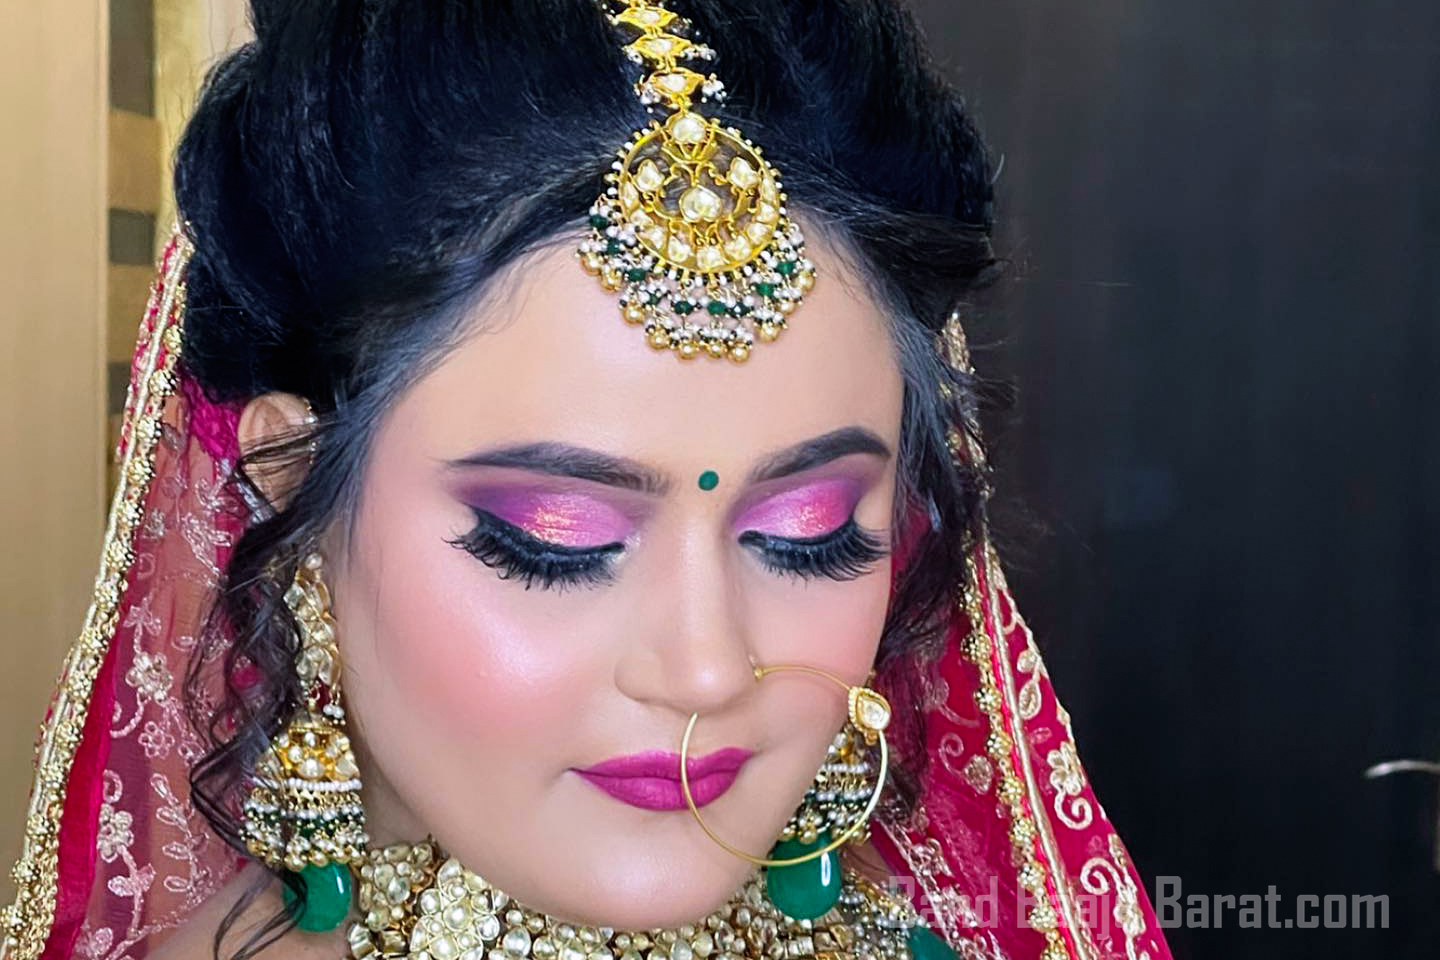 meenkashi dutt makeovers in Khandari Agra